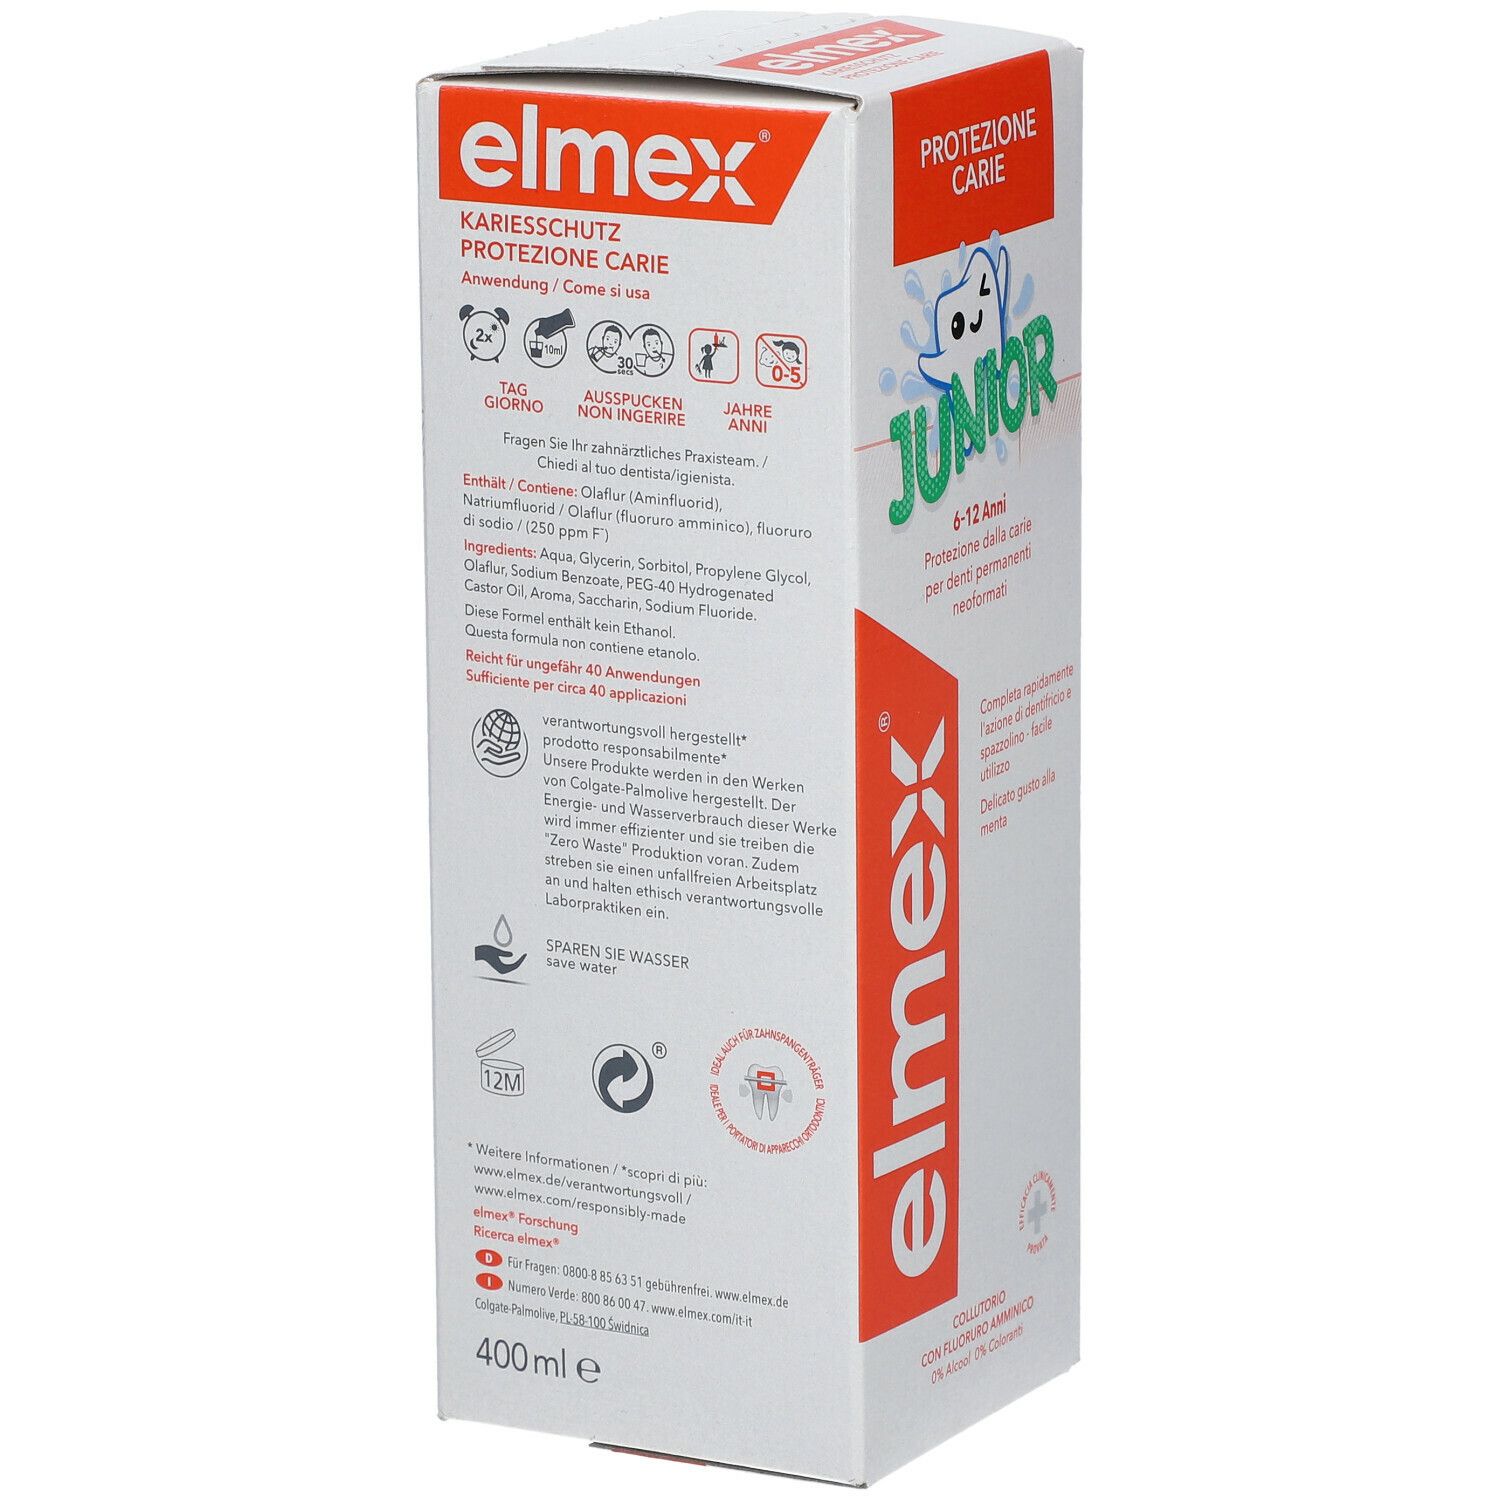 elmex Junior Zahnspülung - für Kinder von 6-12 Jahren